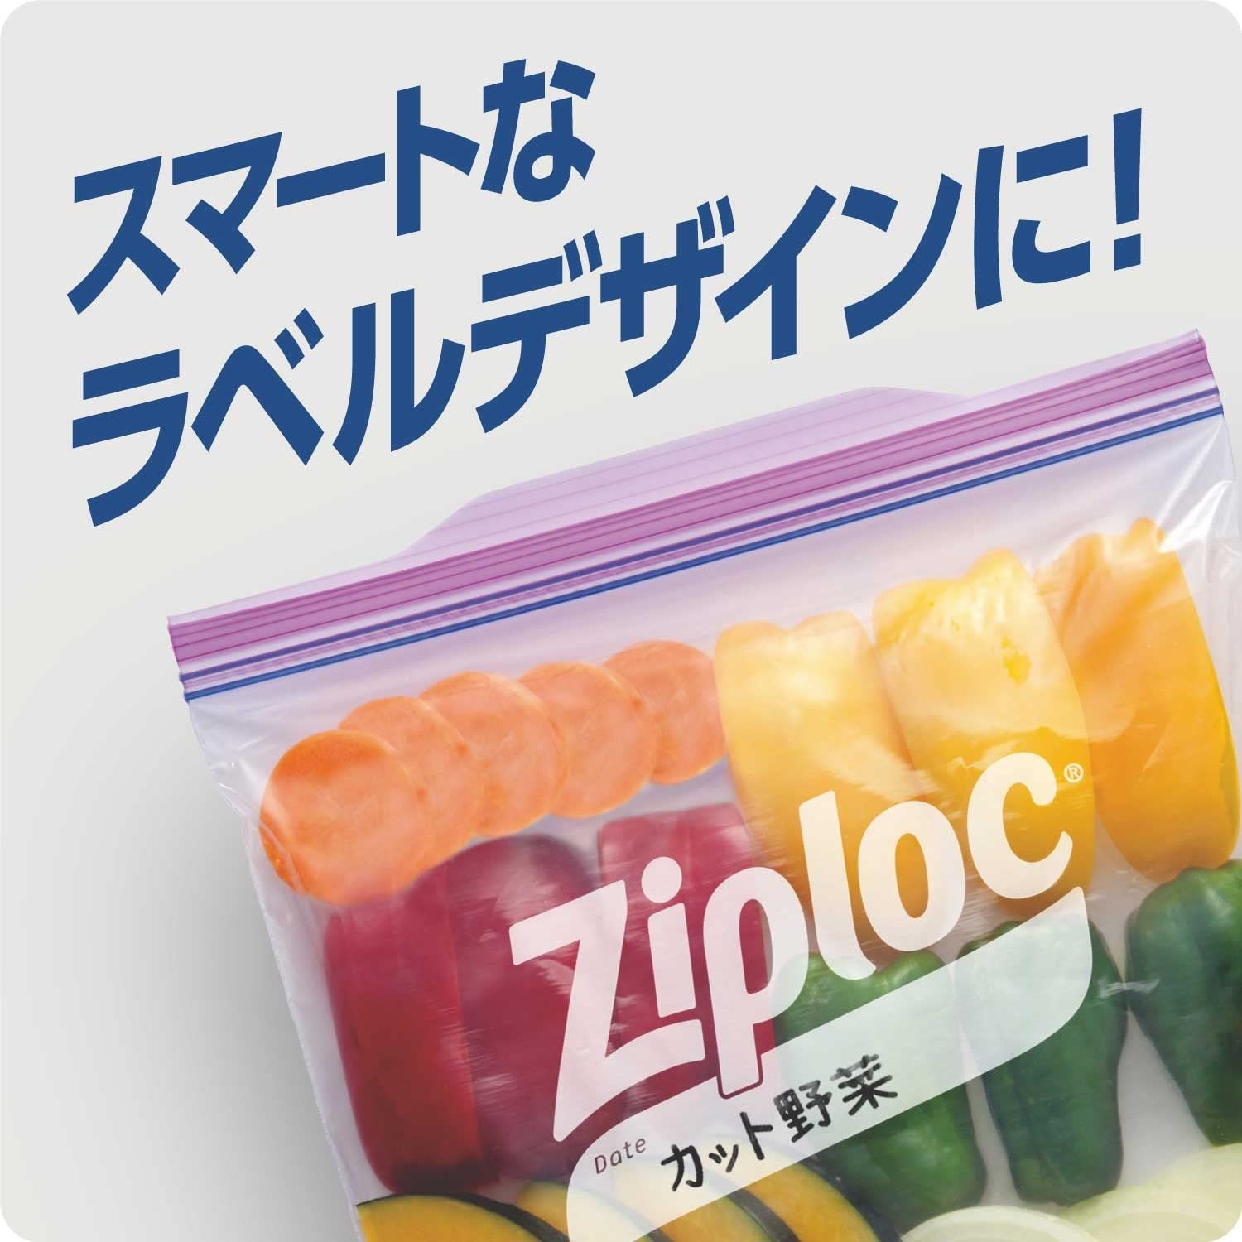 Ziploc(ジップロック) ストックバッグの商品画像5 